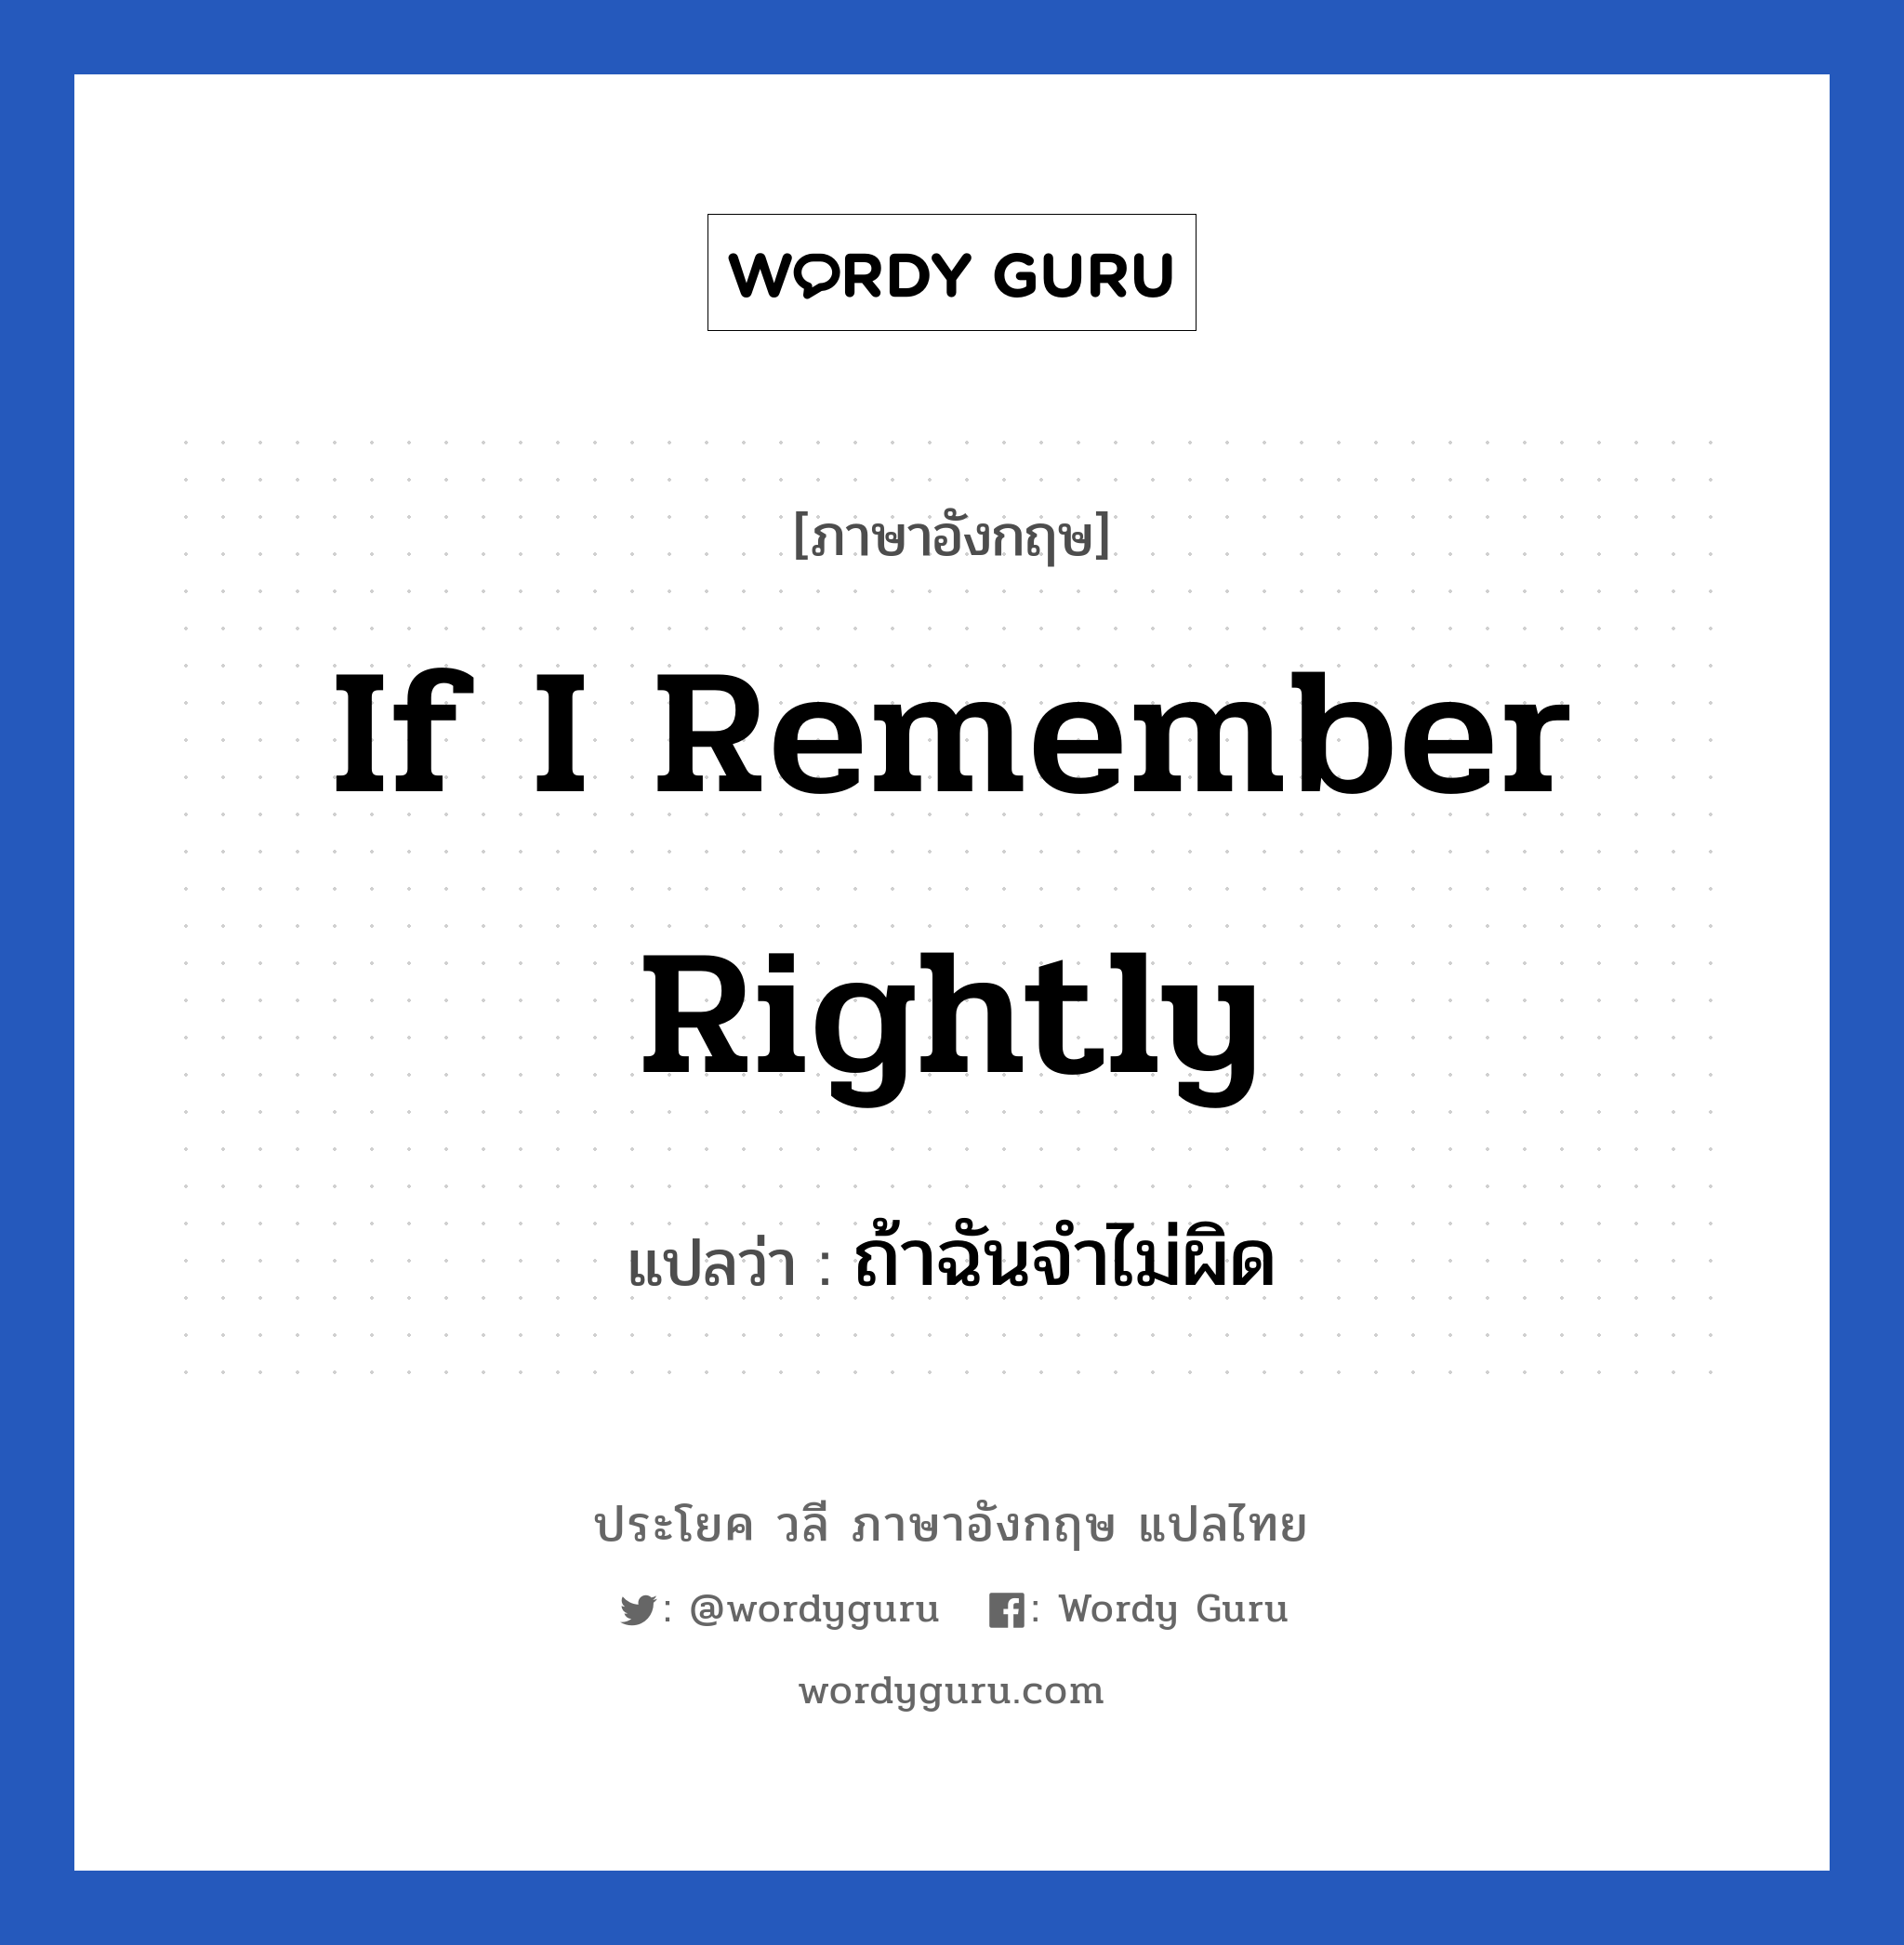 ถ้าฉันจำไม่ผิด ภาษาอังกฤษ?, วลีภาษาอังกฤษ ถ้าฉันจำไม่ผิด แปลว่า If I remember rightly